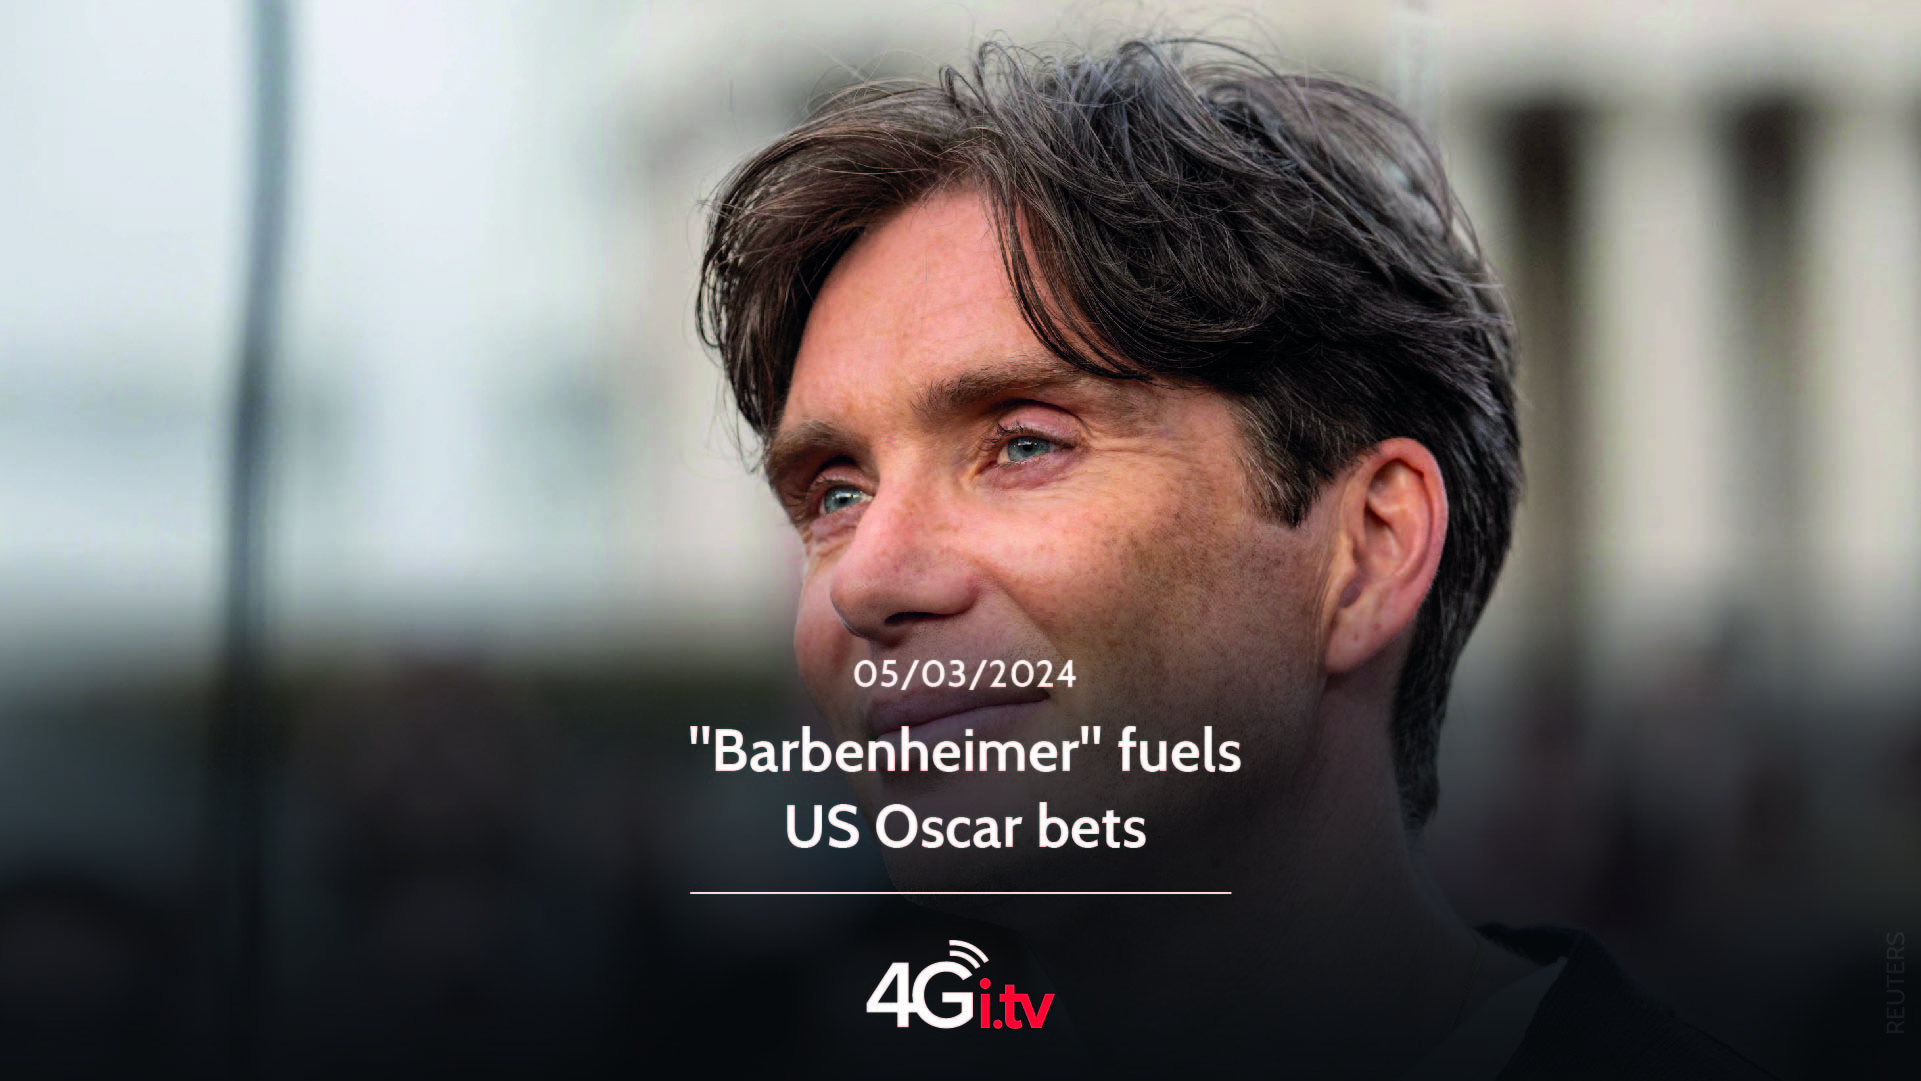 Подробнее о статье “Barbenheimer” fuels US Oscar bets